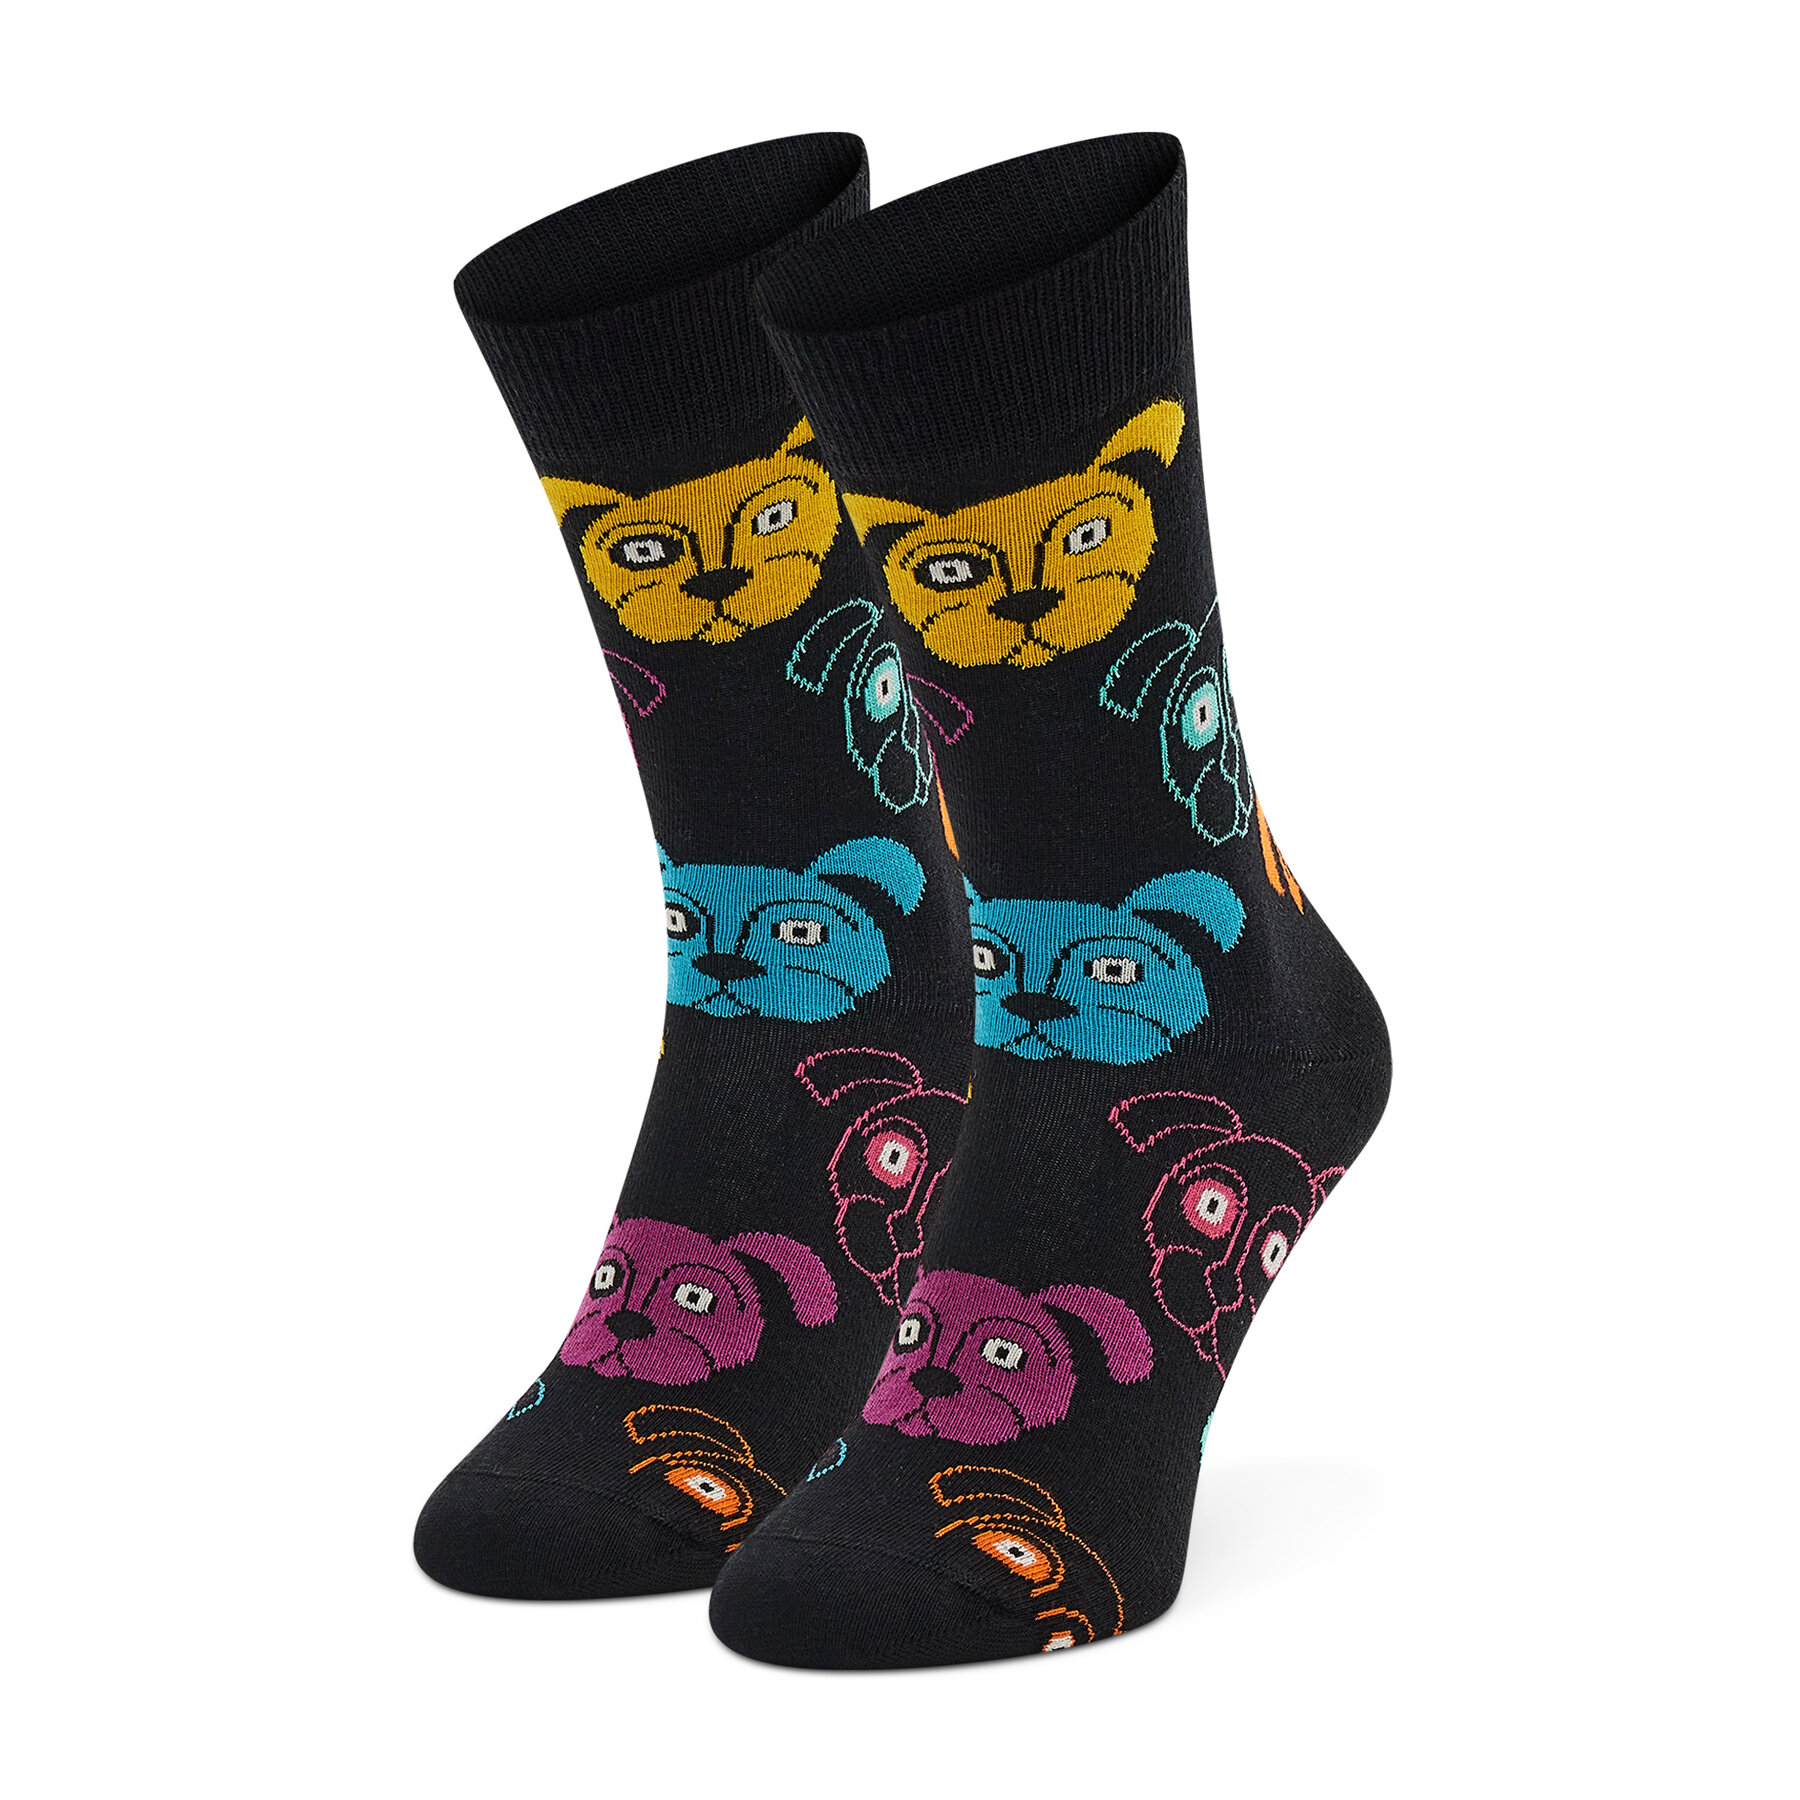 Chaussettes hautes unisex Happy Socks DOG01-9050 Noir